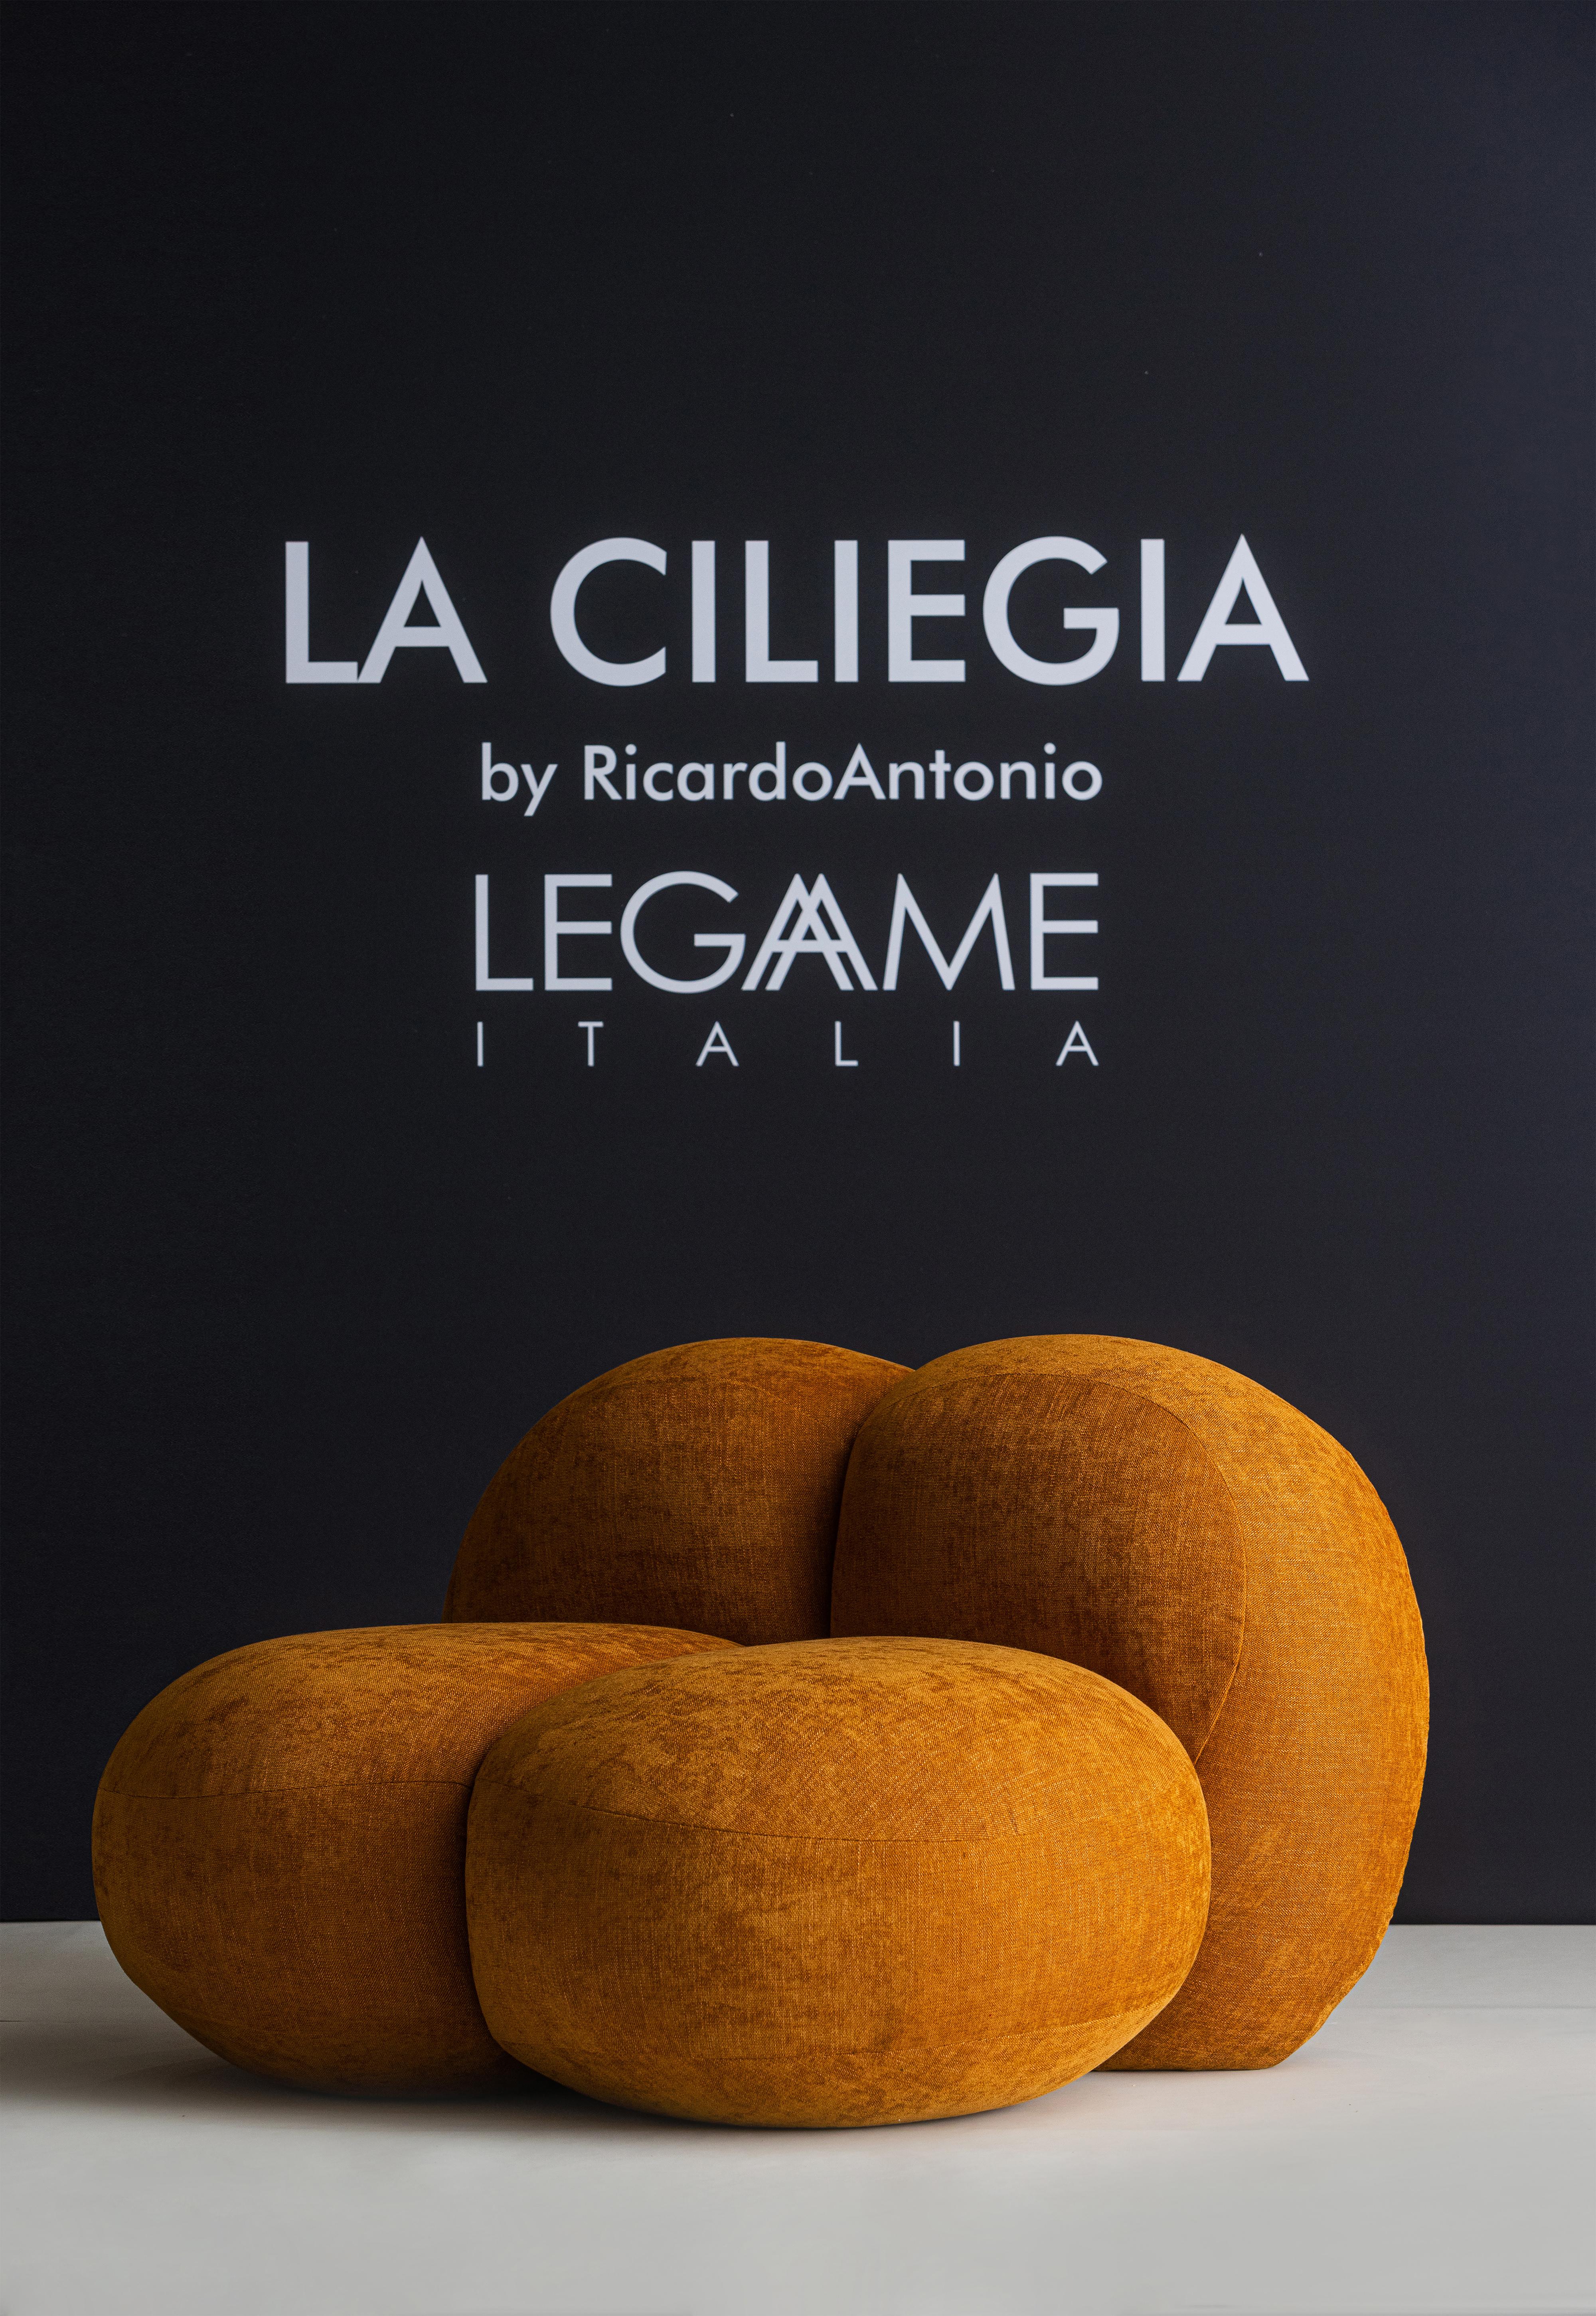 Der brasilianische Designer Ricardo Antonio, der für seine Fähigkeit bekannt ist, ikonische Designstücke zu entwerfen, hat die organischen Formen einer Frucht, der Kirsche, in einen Sessel verwandelt, ein unverwechselbares Objekt. 
Die Proportionen